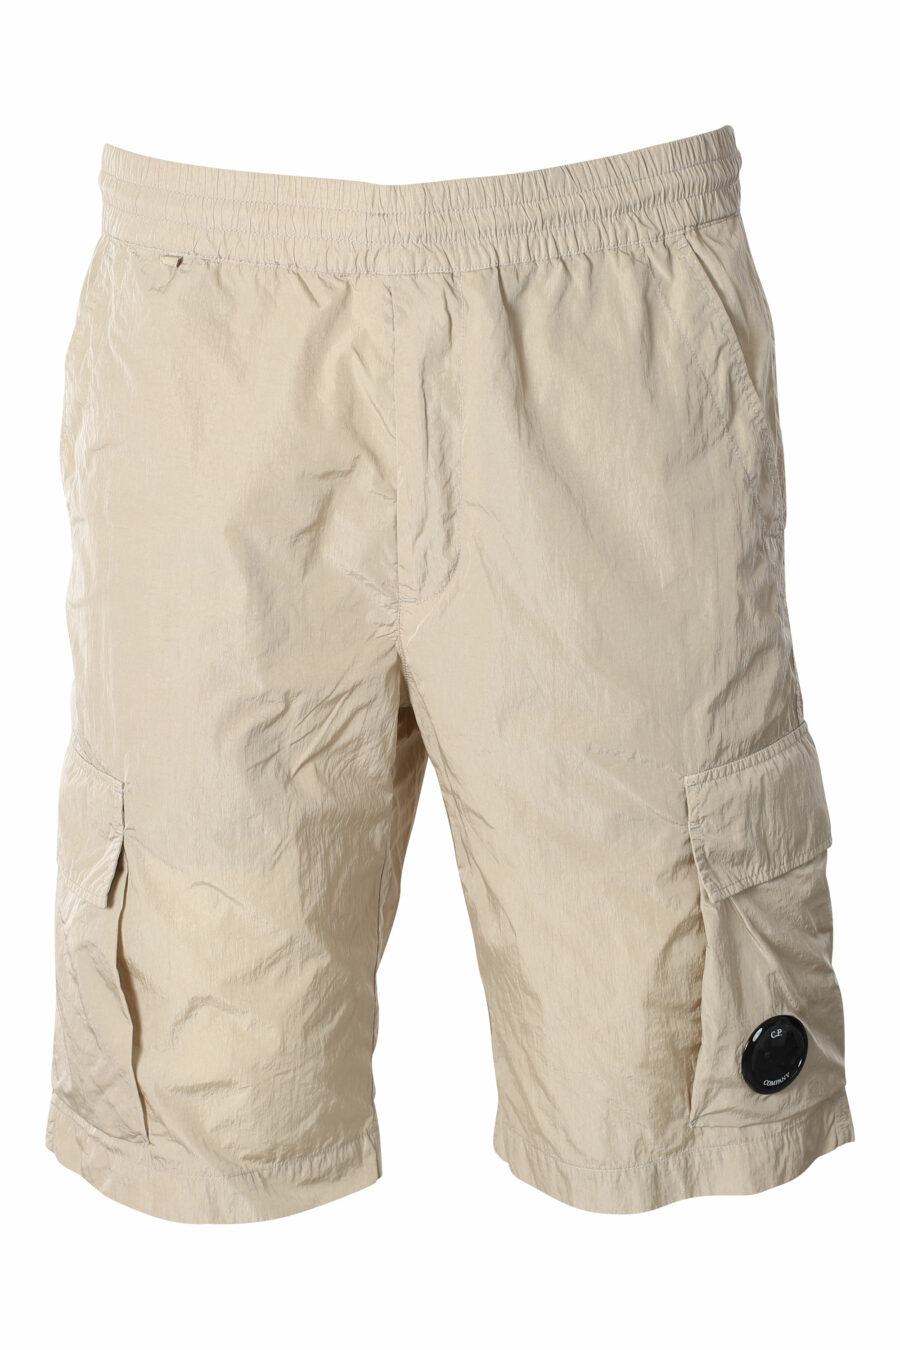 Pantalón corto midi beige estilo cargo con minilogo circular - IMG 9542